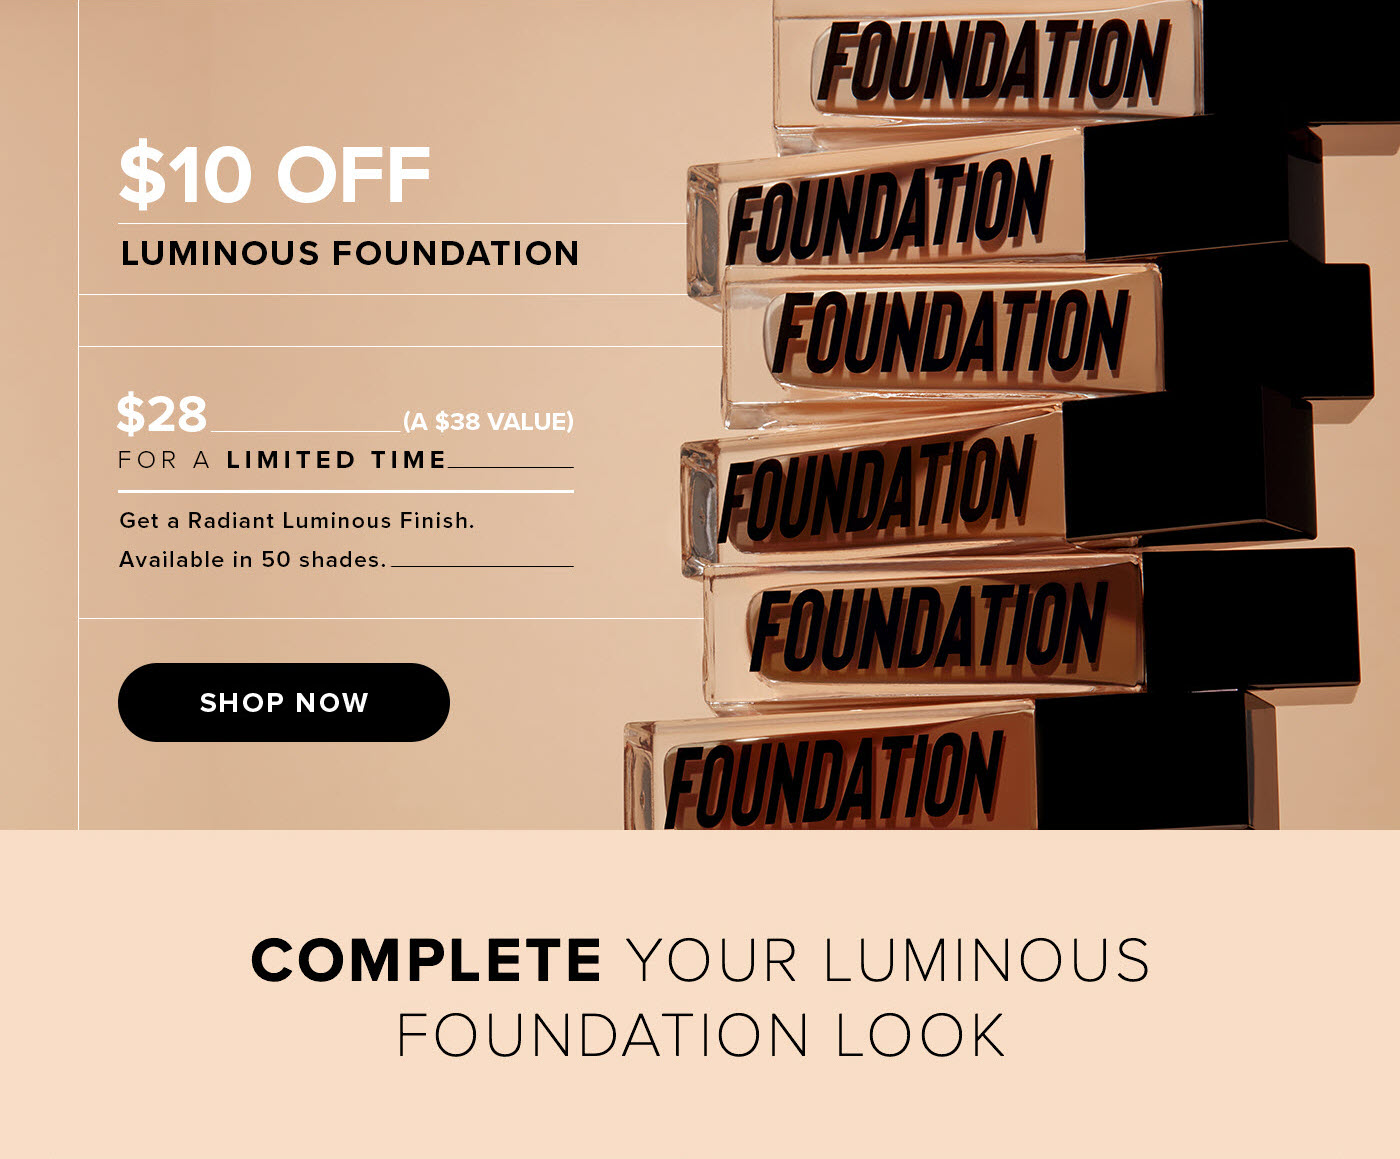 Last Chance! $10 Off Luminous Foundation - Shop Now